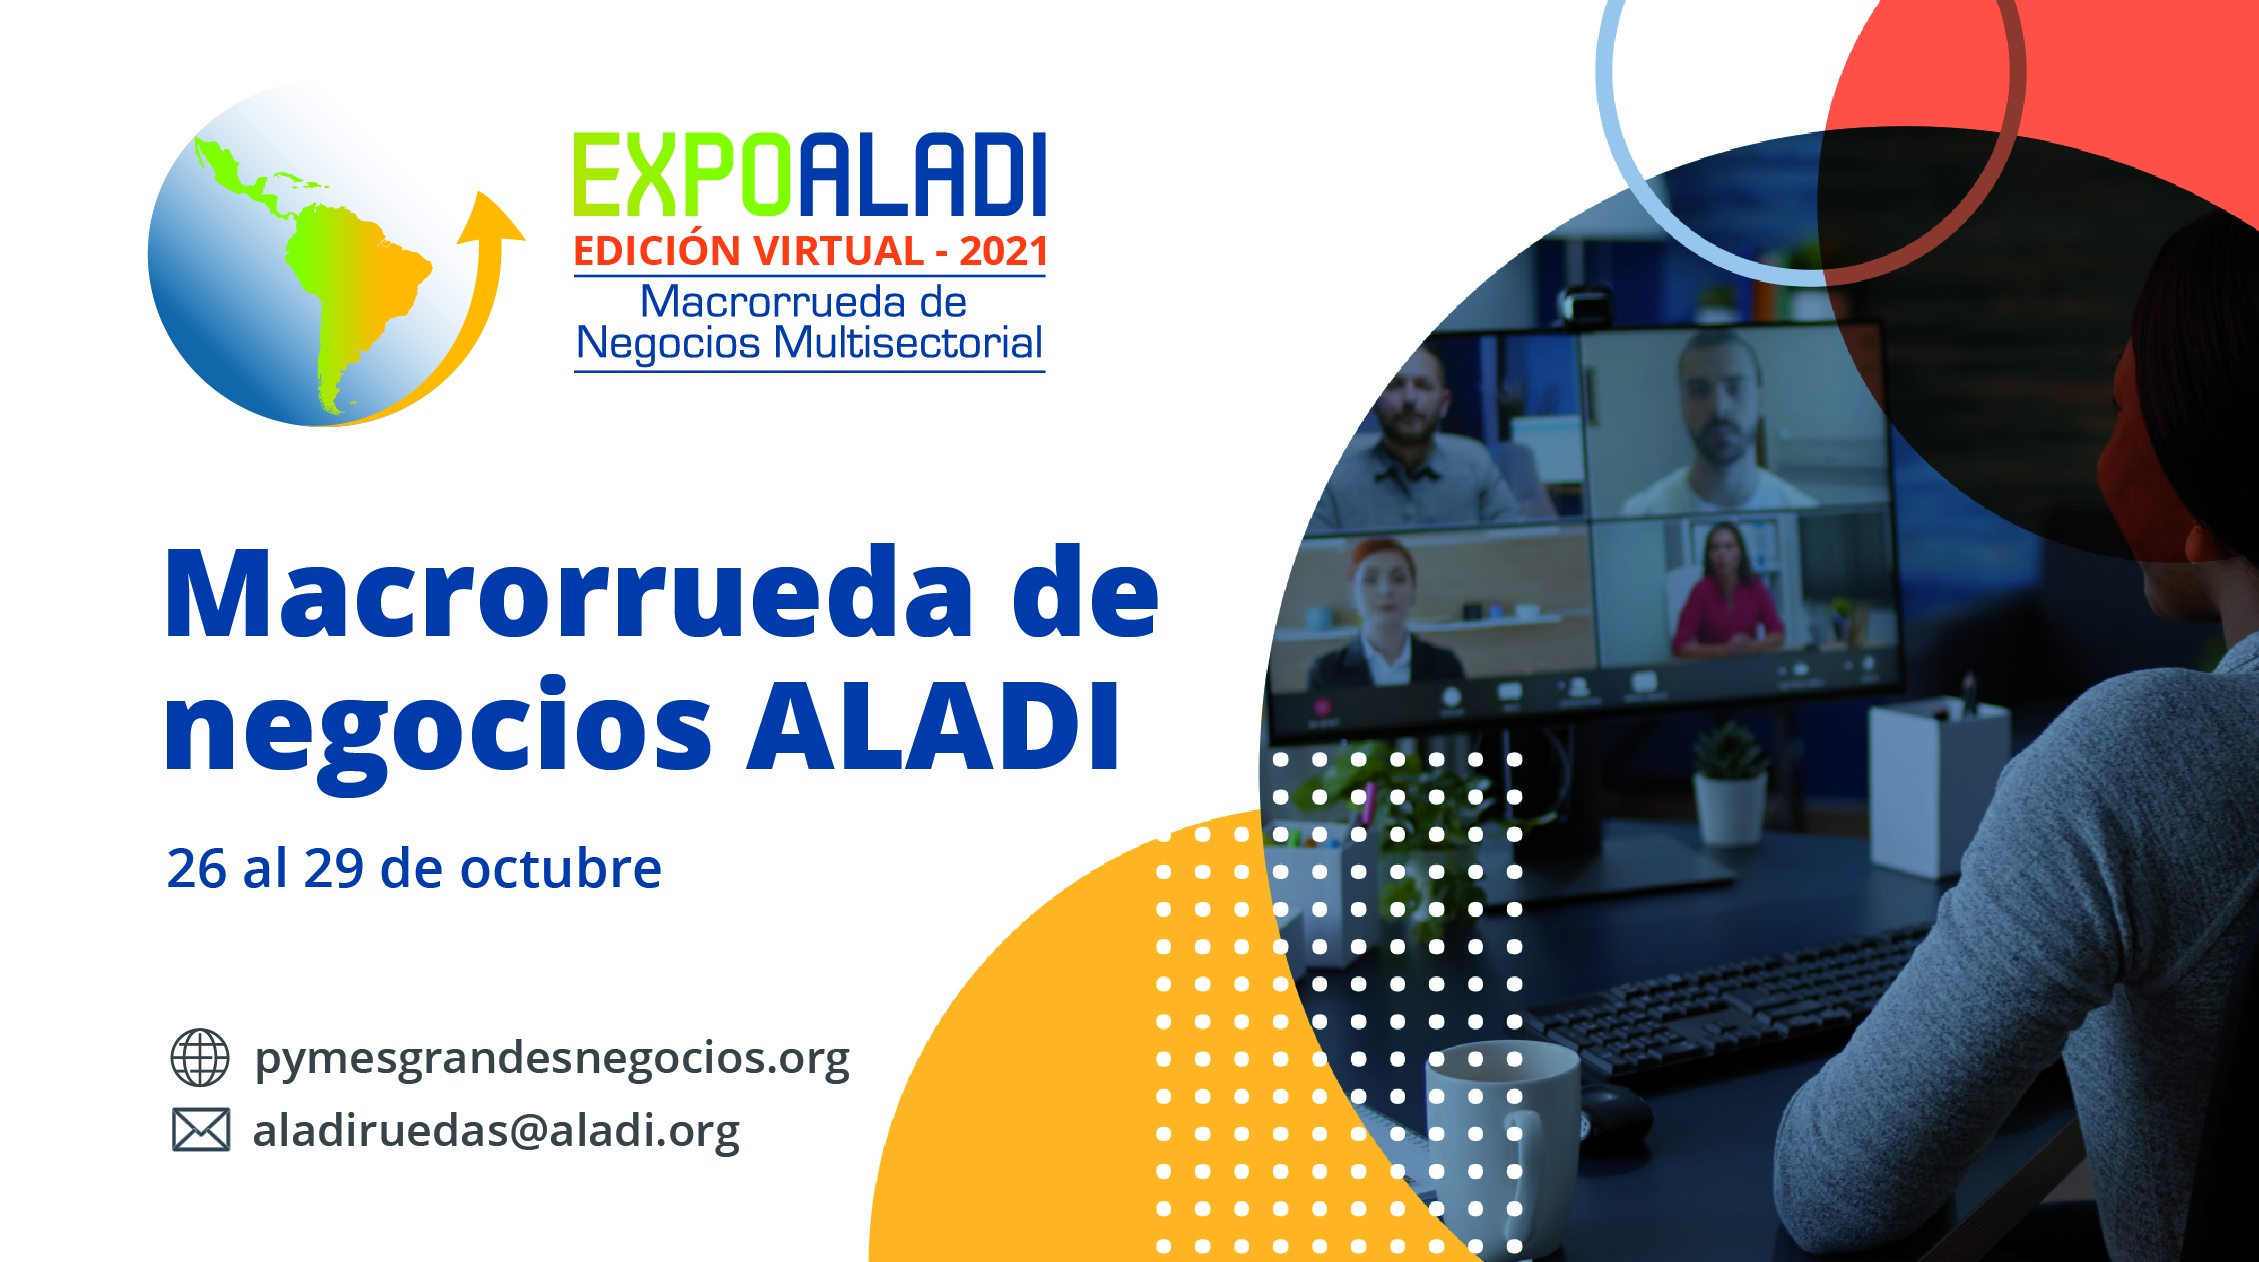 EXPO ALADI 2021 – Macrorrueda de Negocios Multisectorial. Edición Virtual |  Pymes Latinas Grandes Negocios